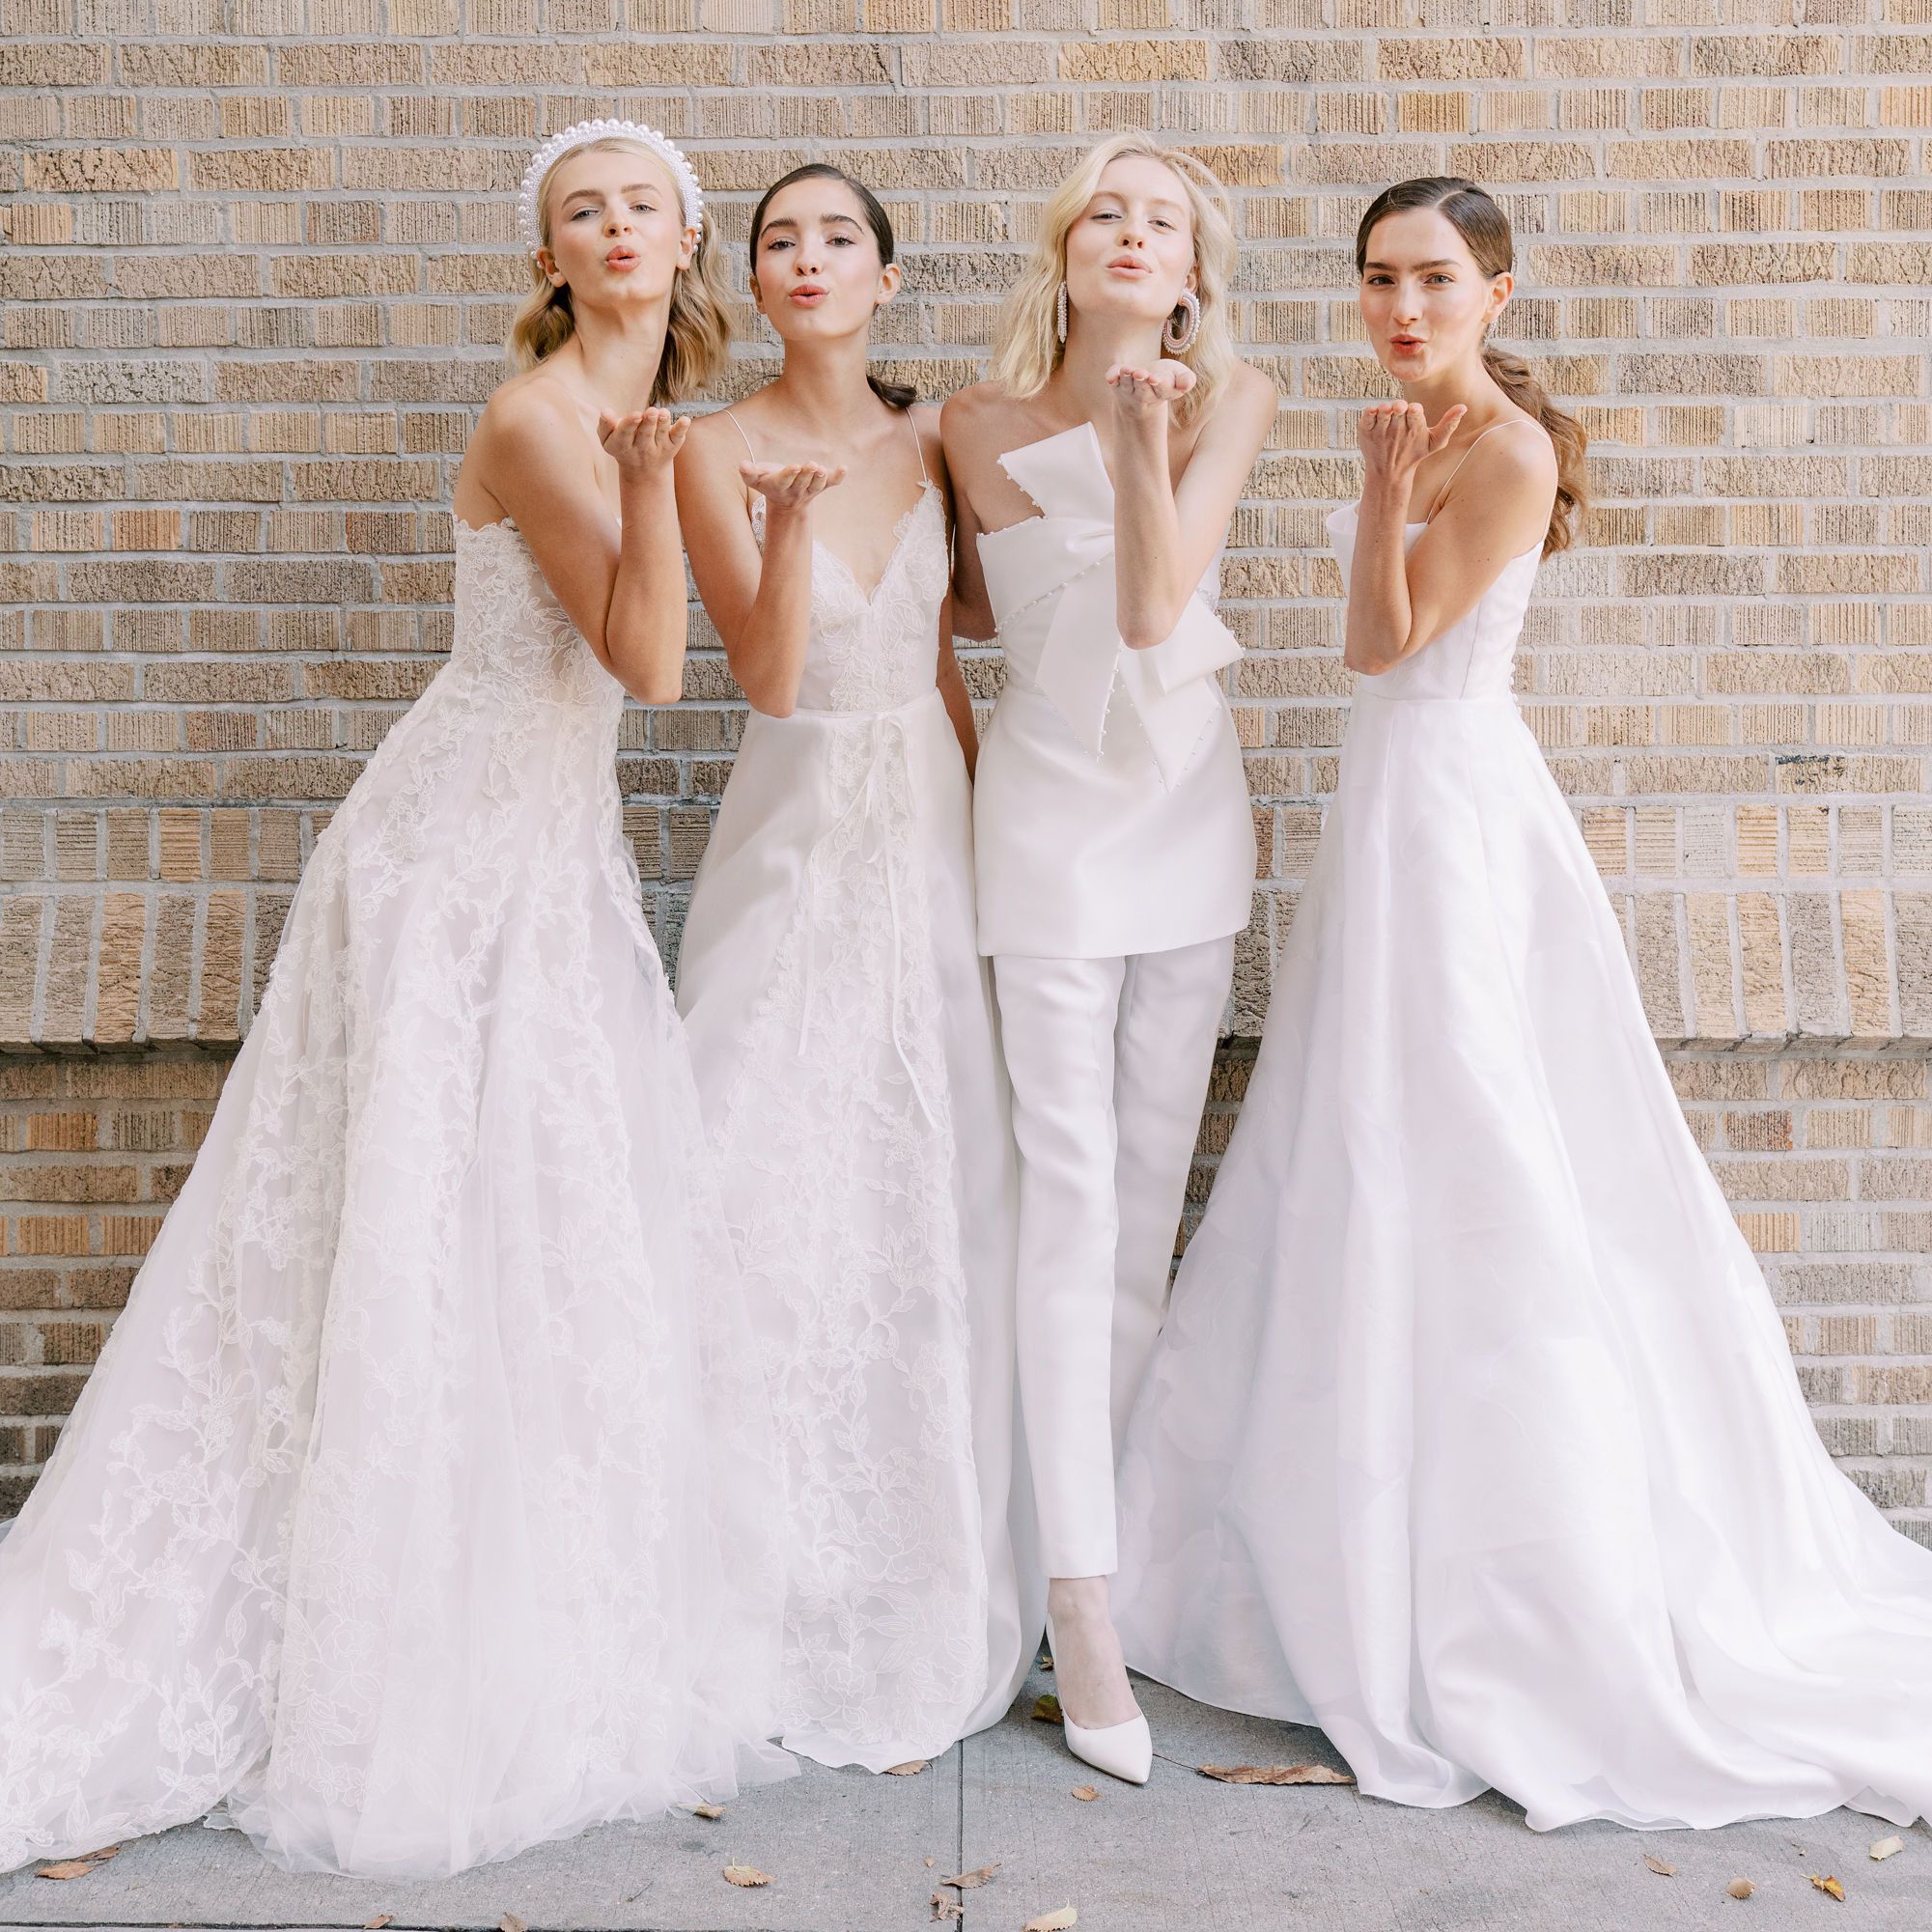 4 kiểu trang phục khiến bạn trông kém duyên khi đi dự tiệc cưới